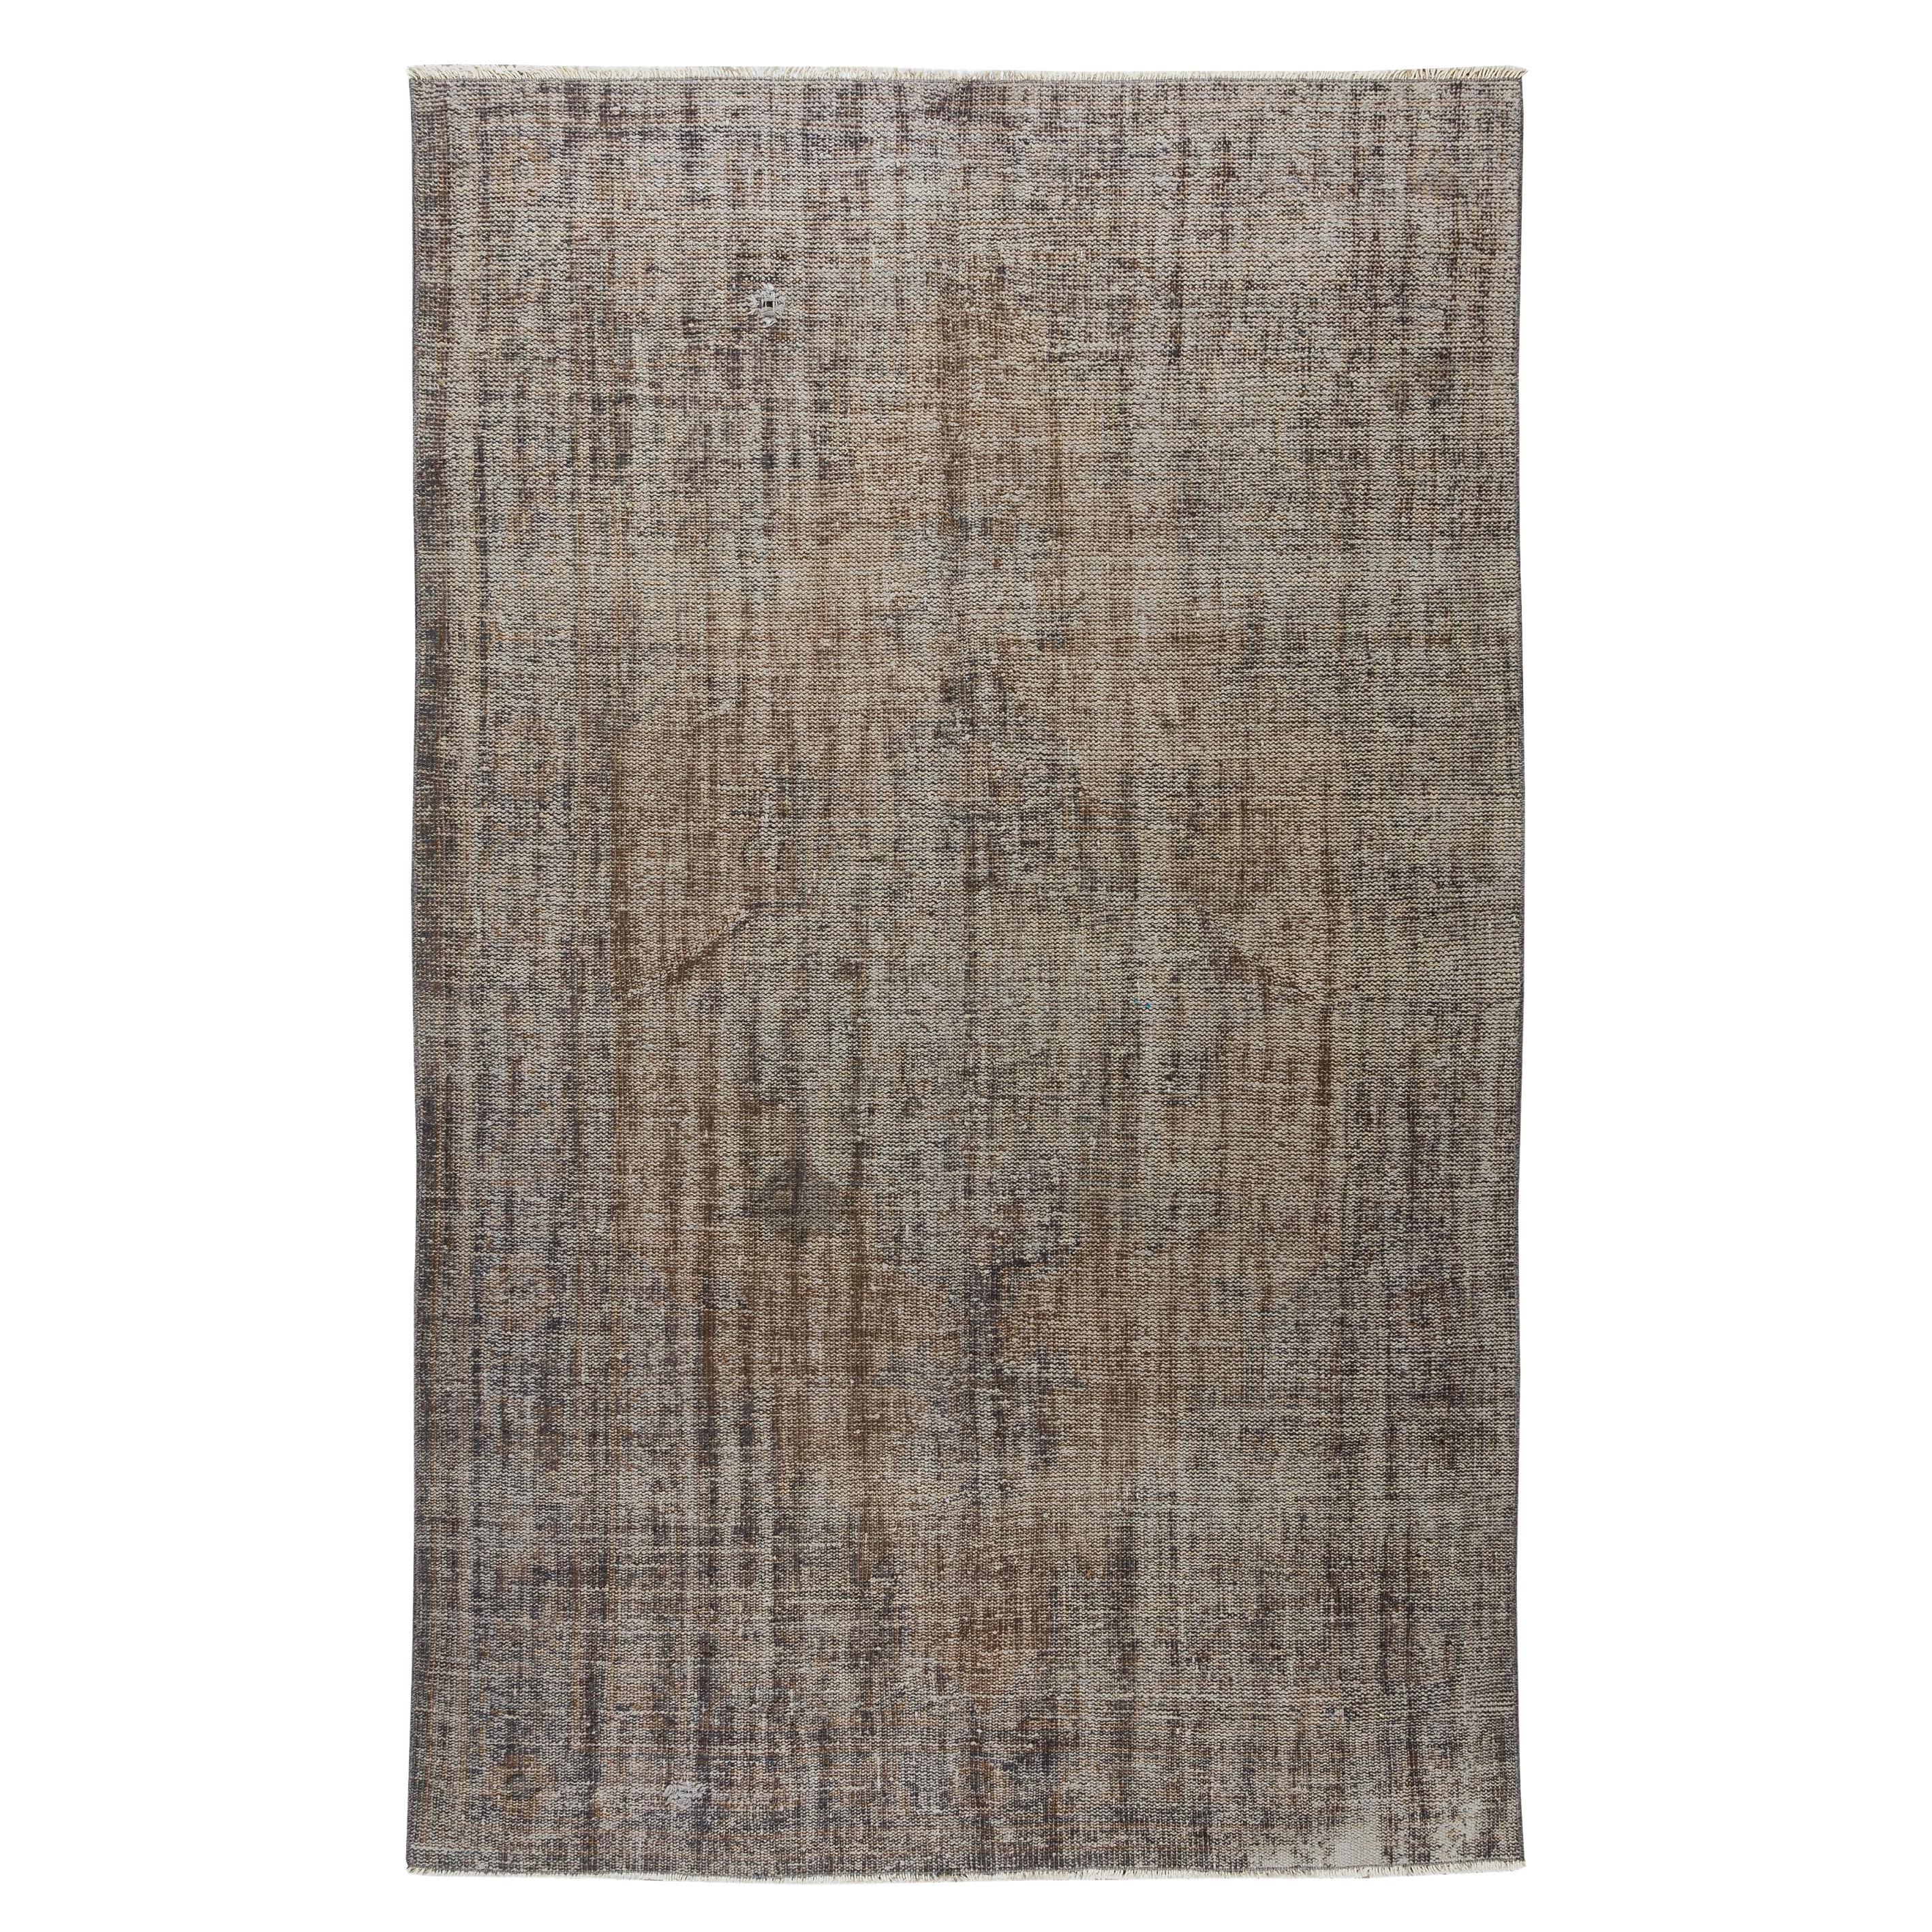 5.7x9 Ft Traditioneller handgefertigter Shabby-Chic-Teppich in Grau, Anatolischer Teppich